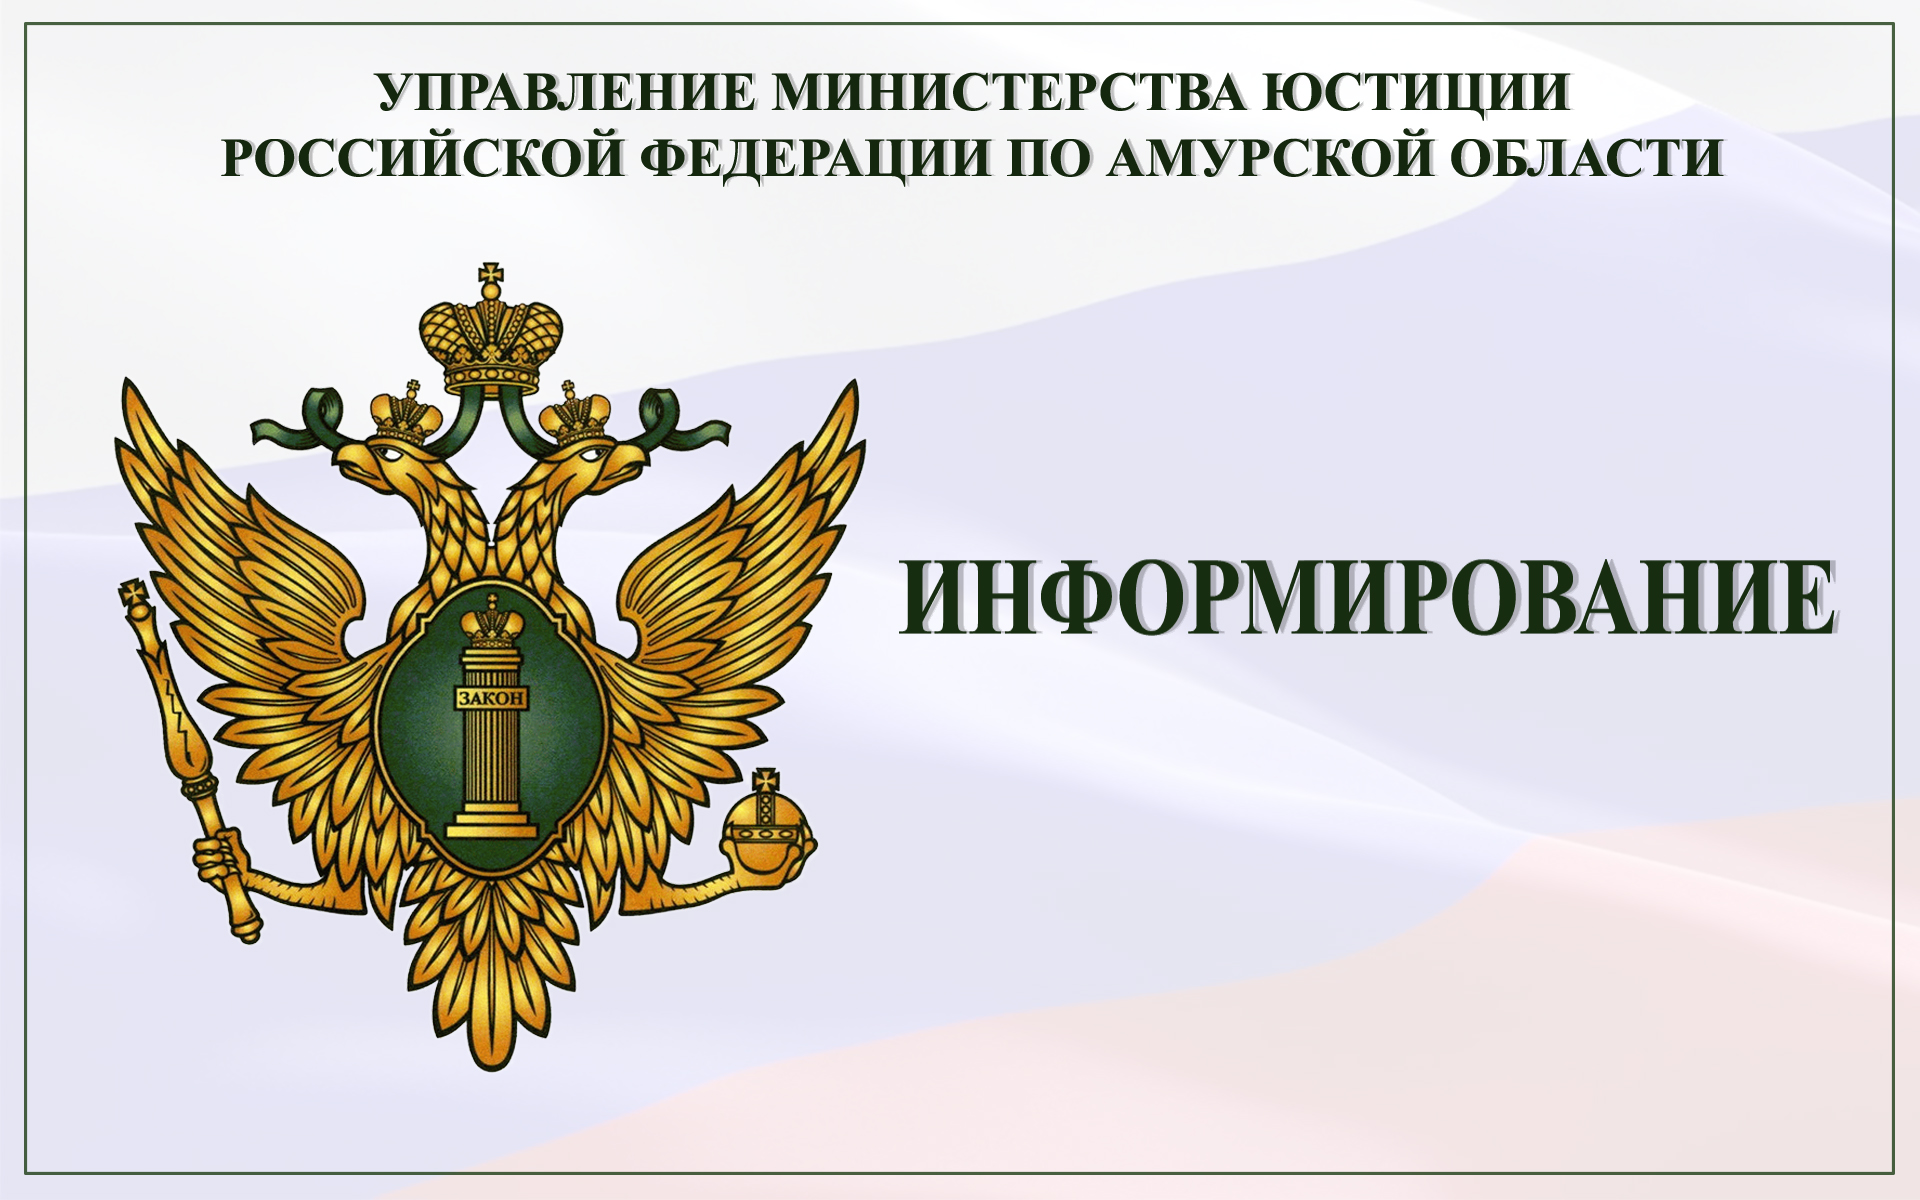 Министерство юстиции РФ организация